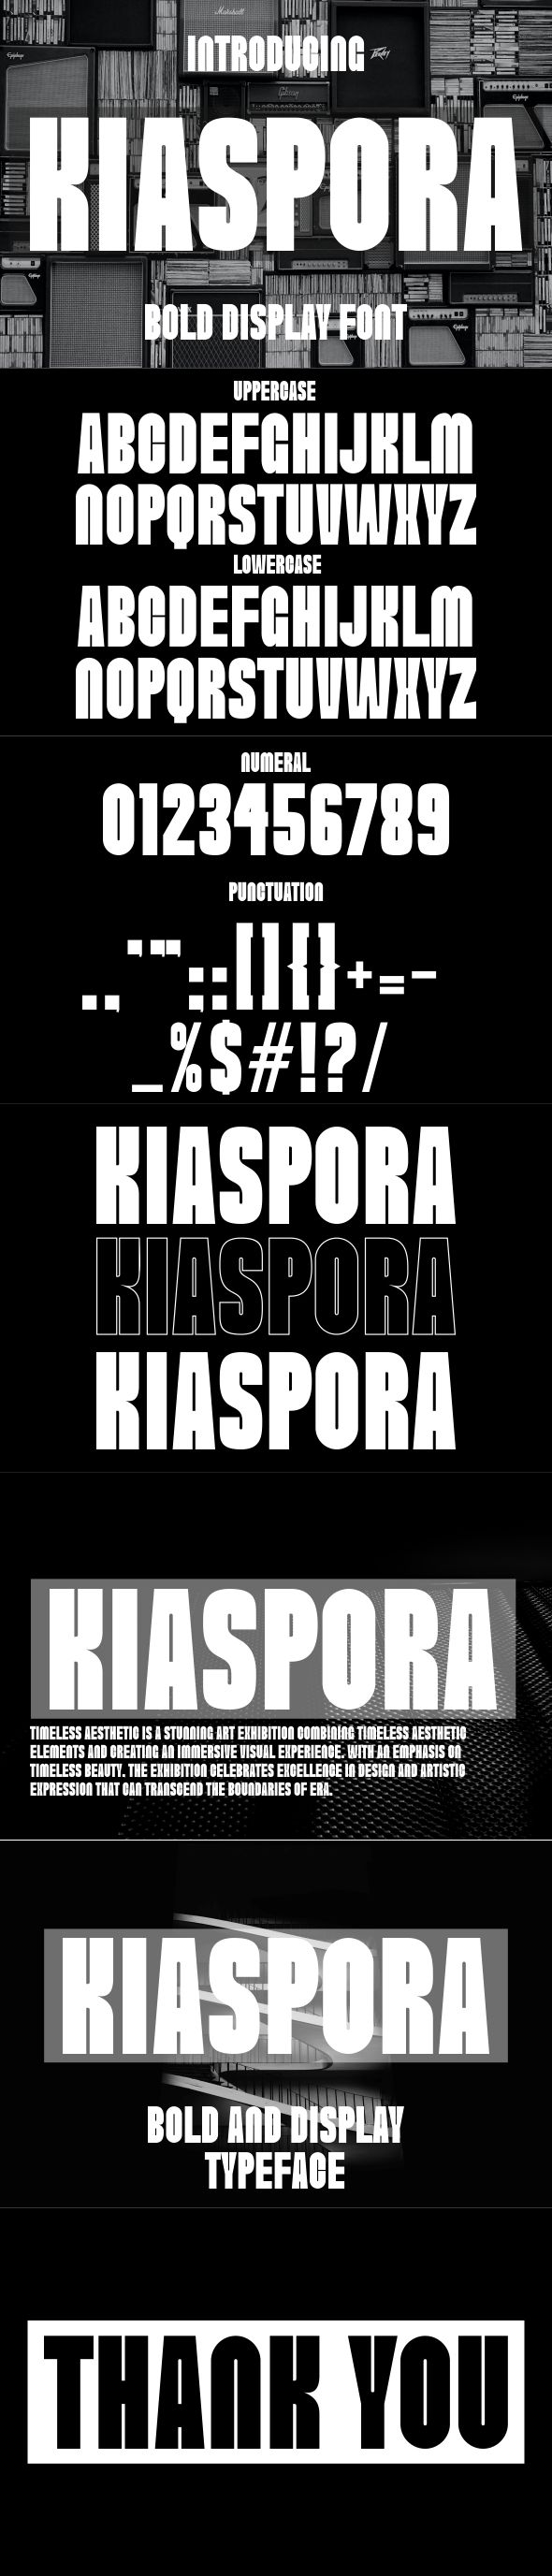 Kiaspora